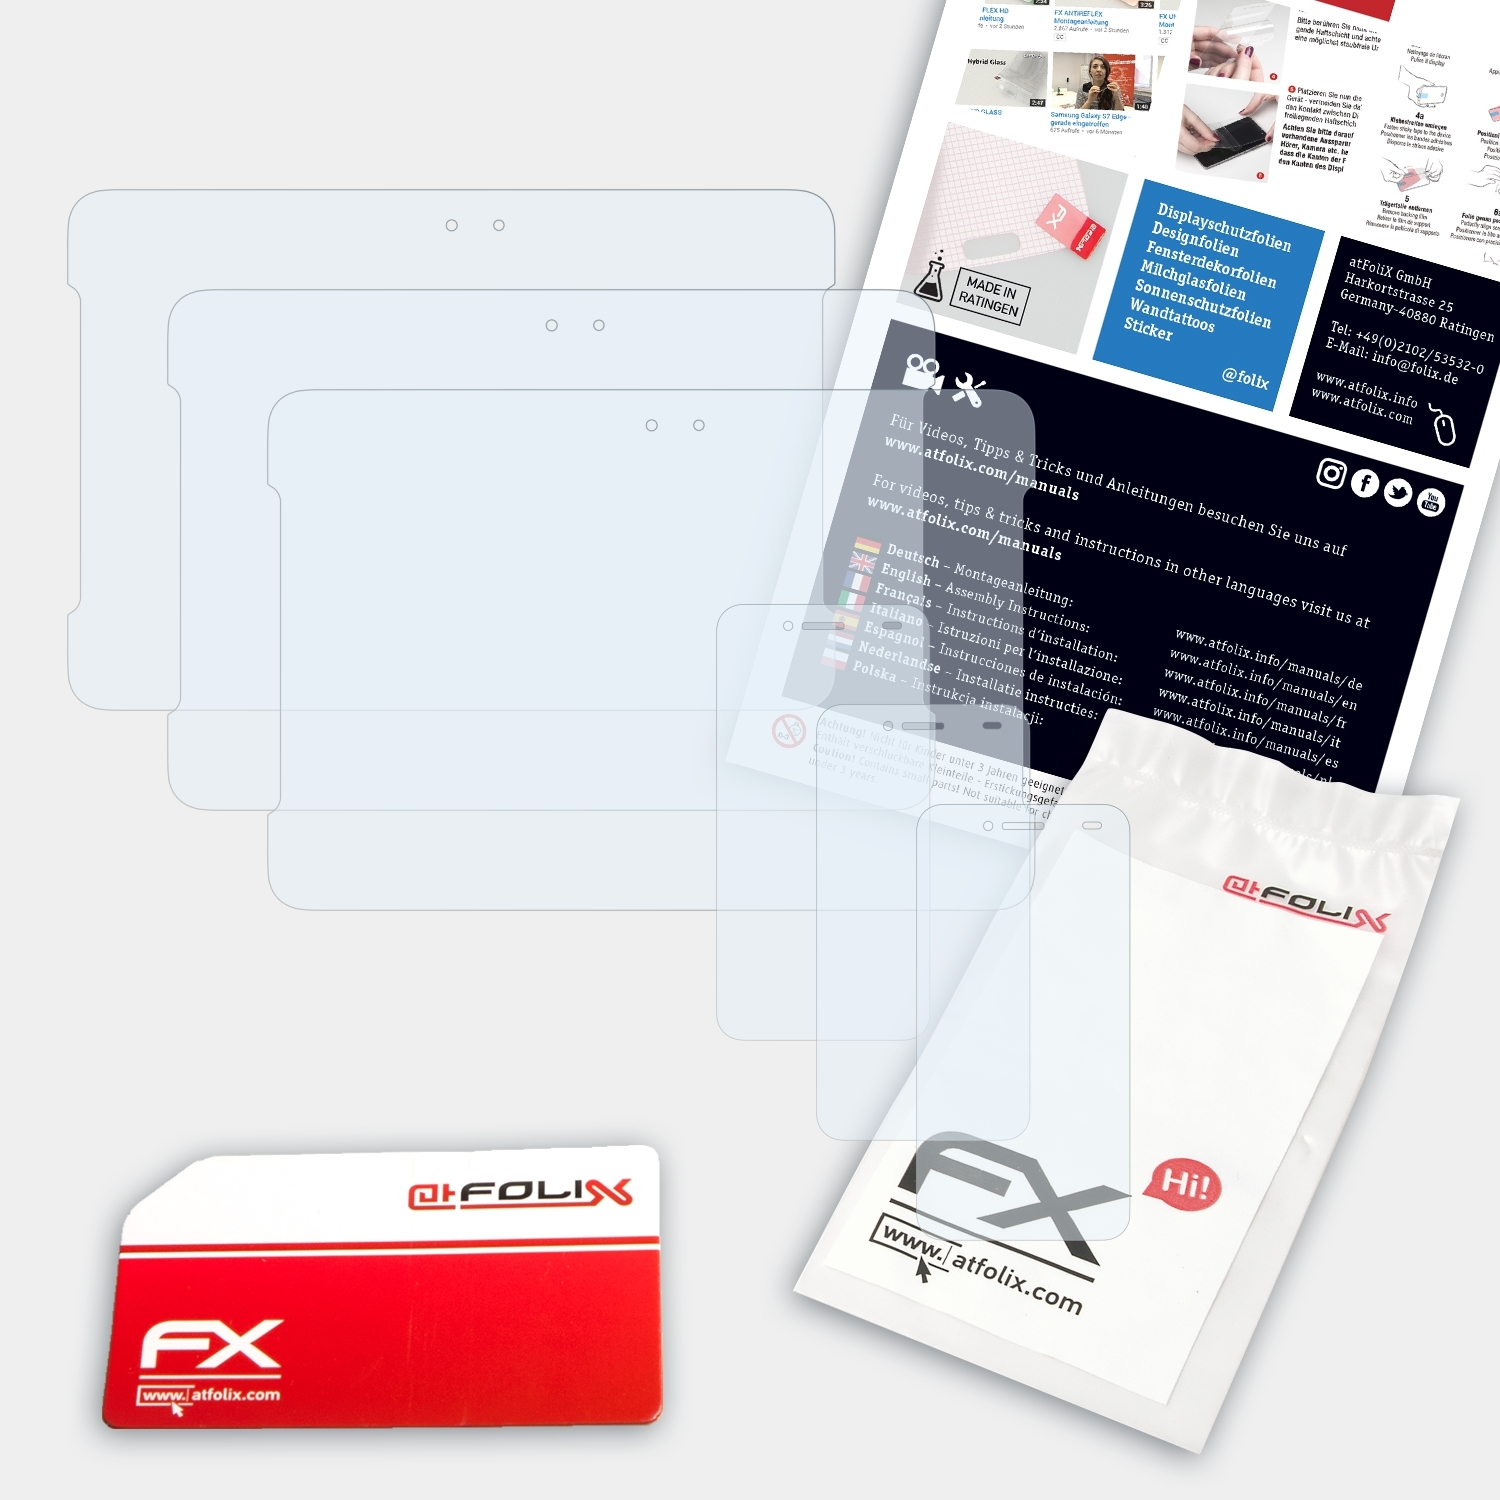 Asus S) FX-Clear PadFone Displayschutz(für ATFOLIX 3x